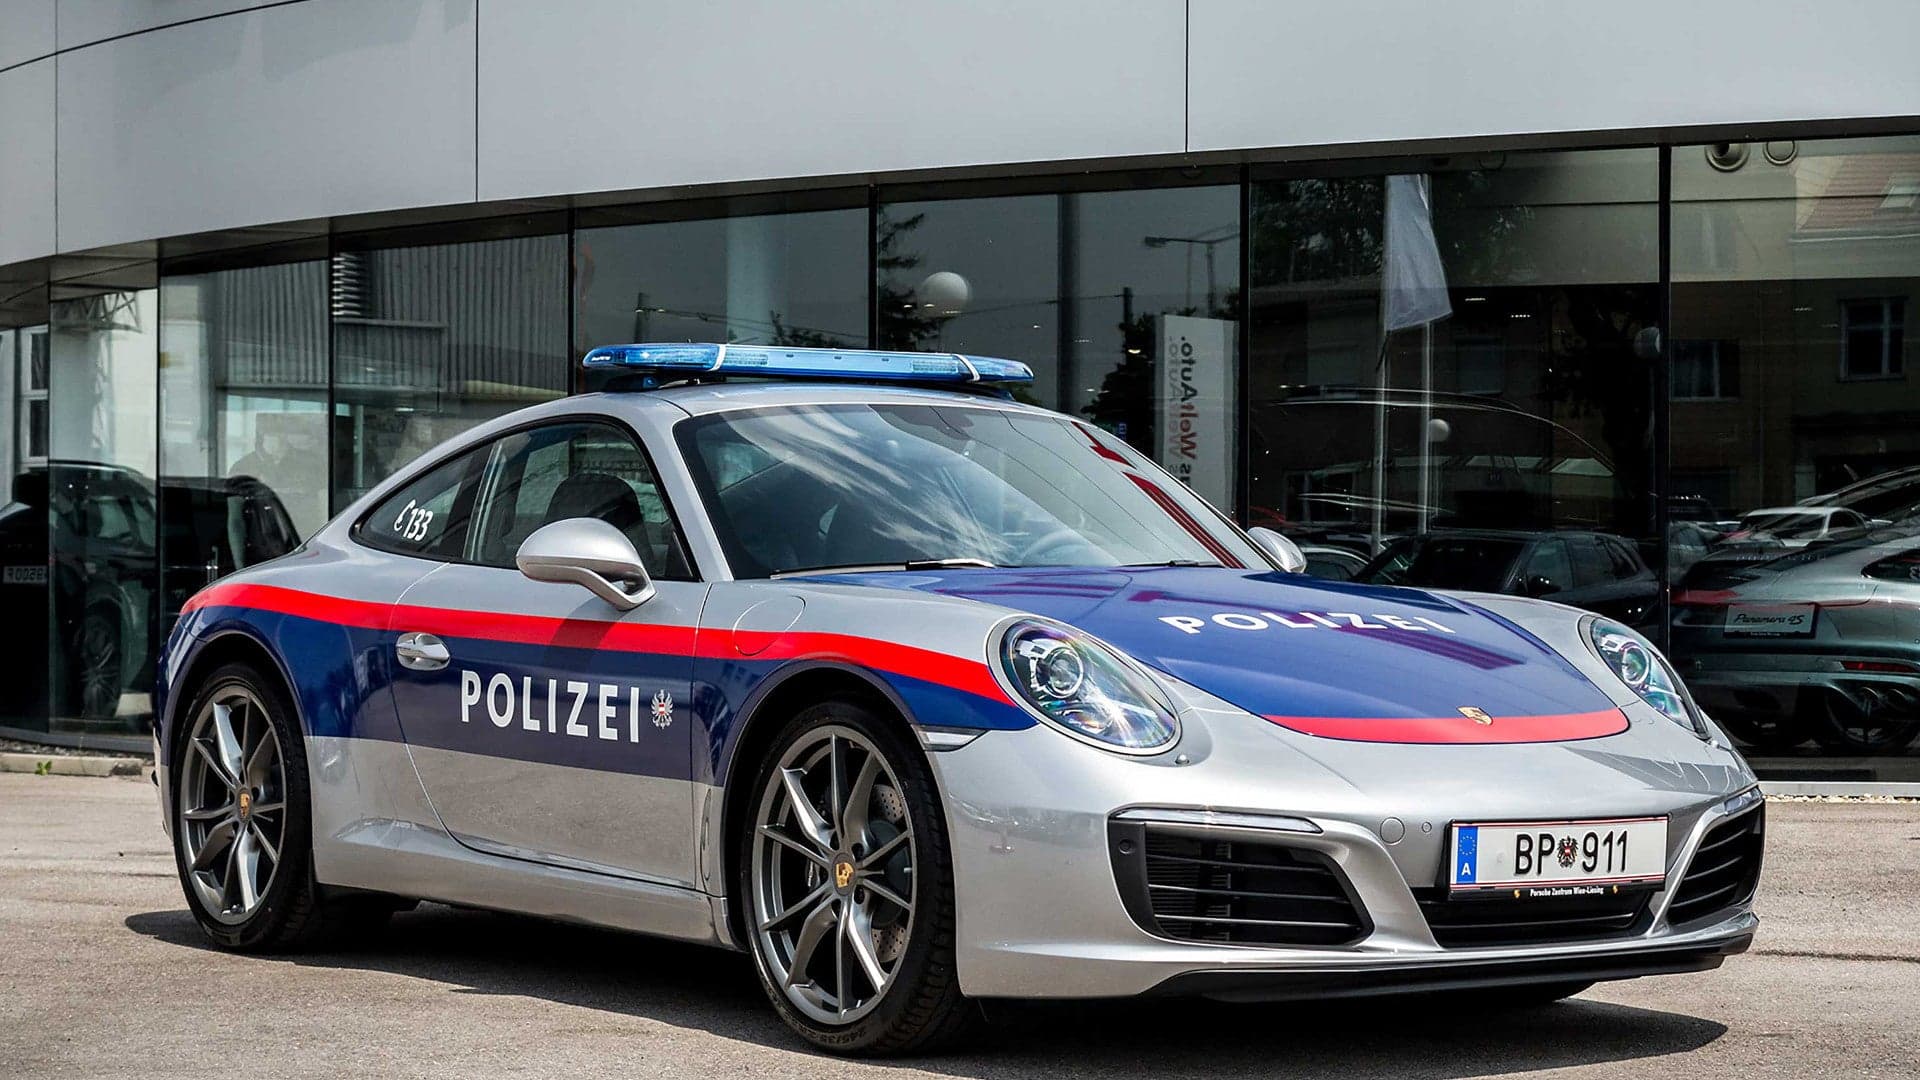 This Porsche 911 Carrera Police Car Will Patrol Austria’s Motorways